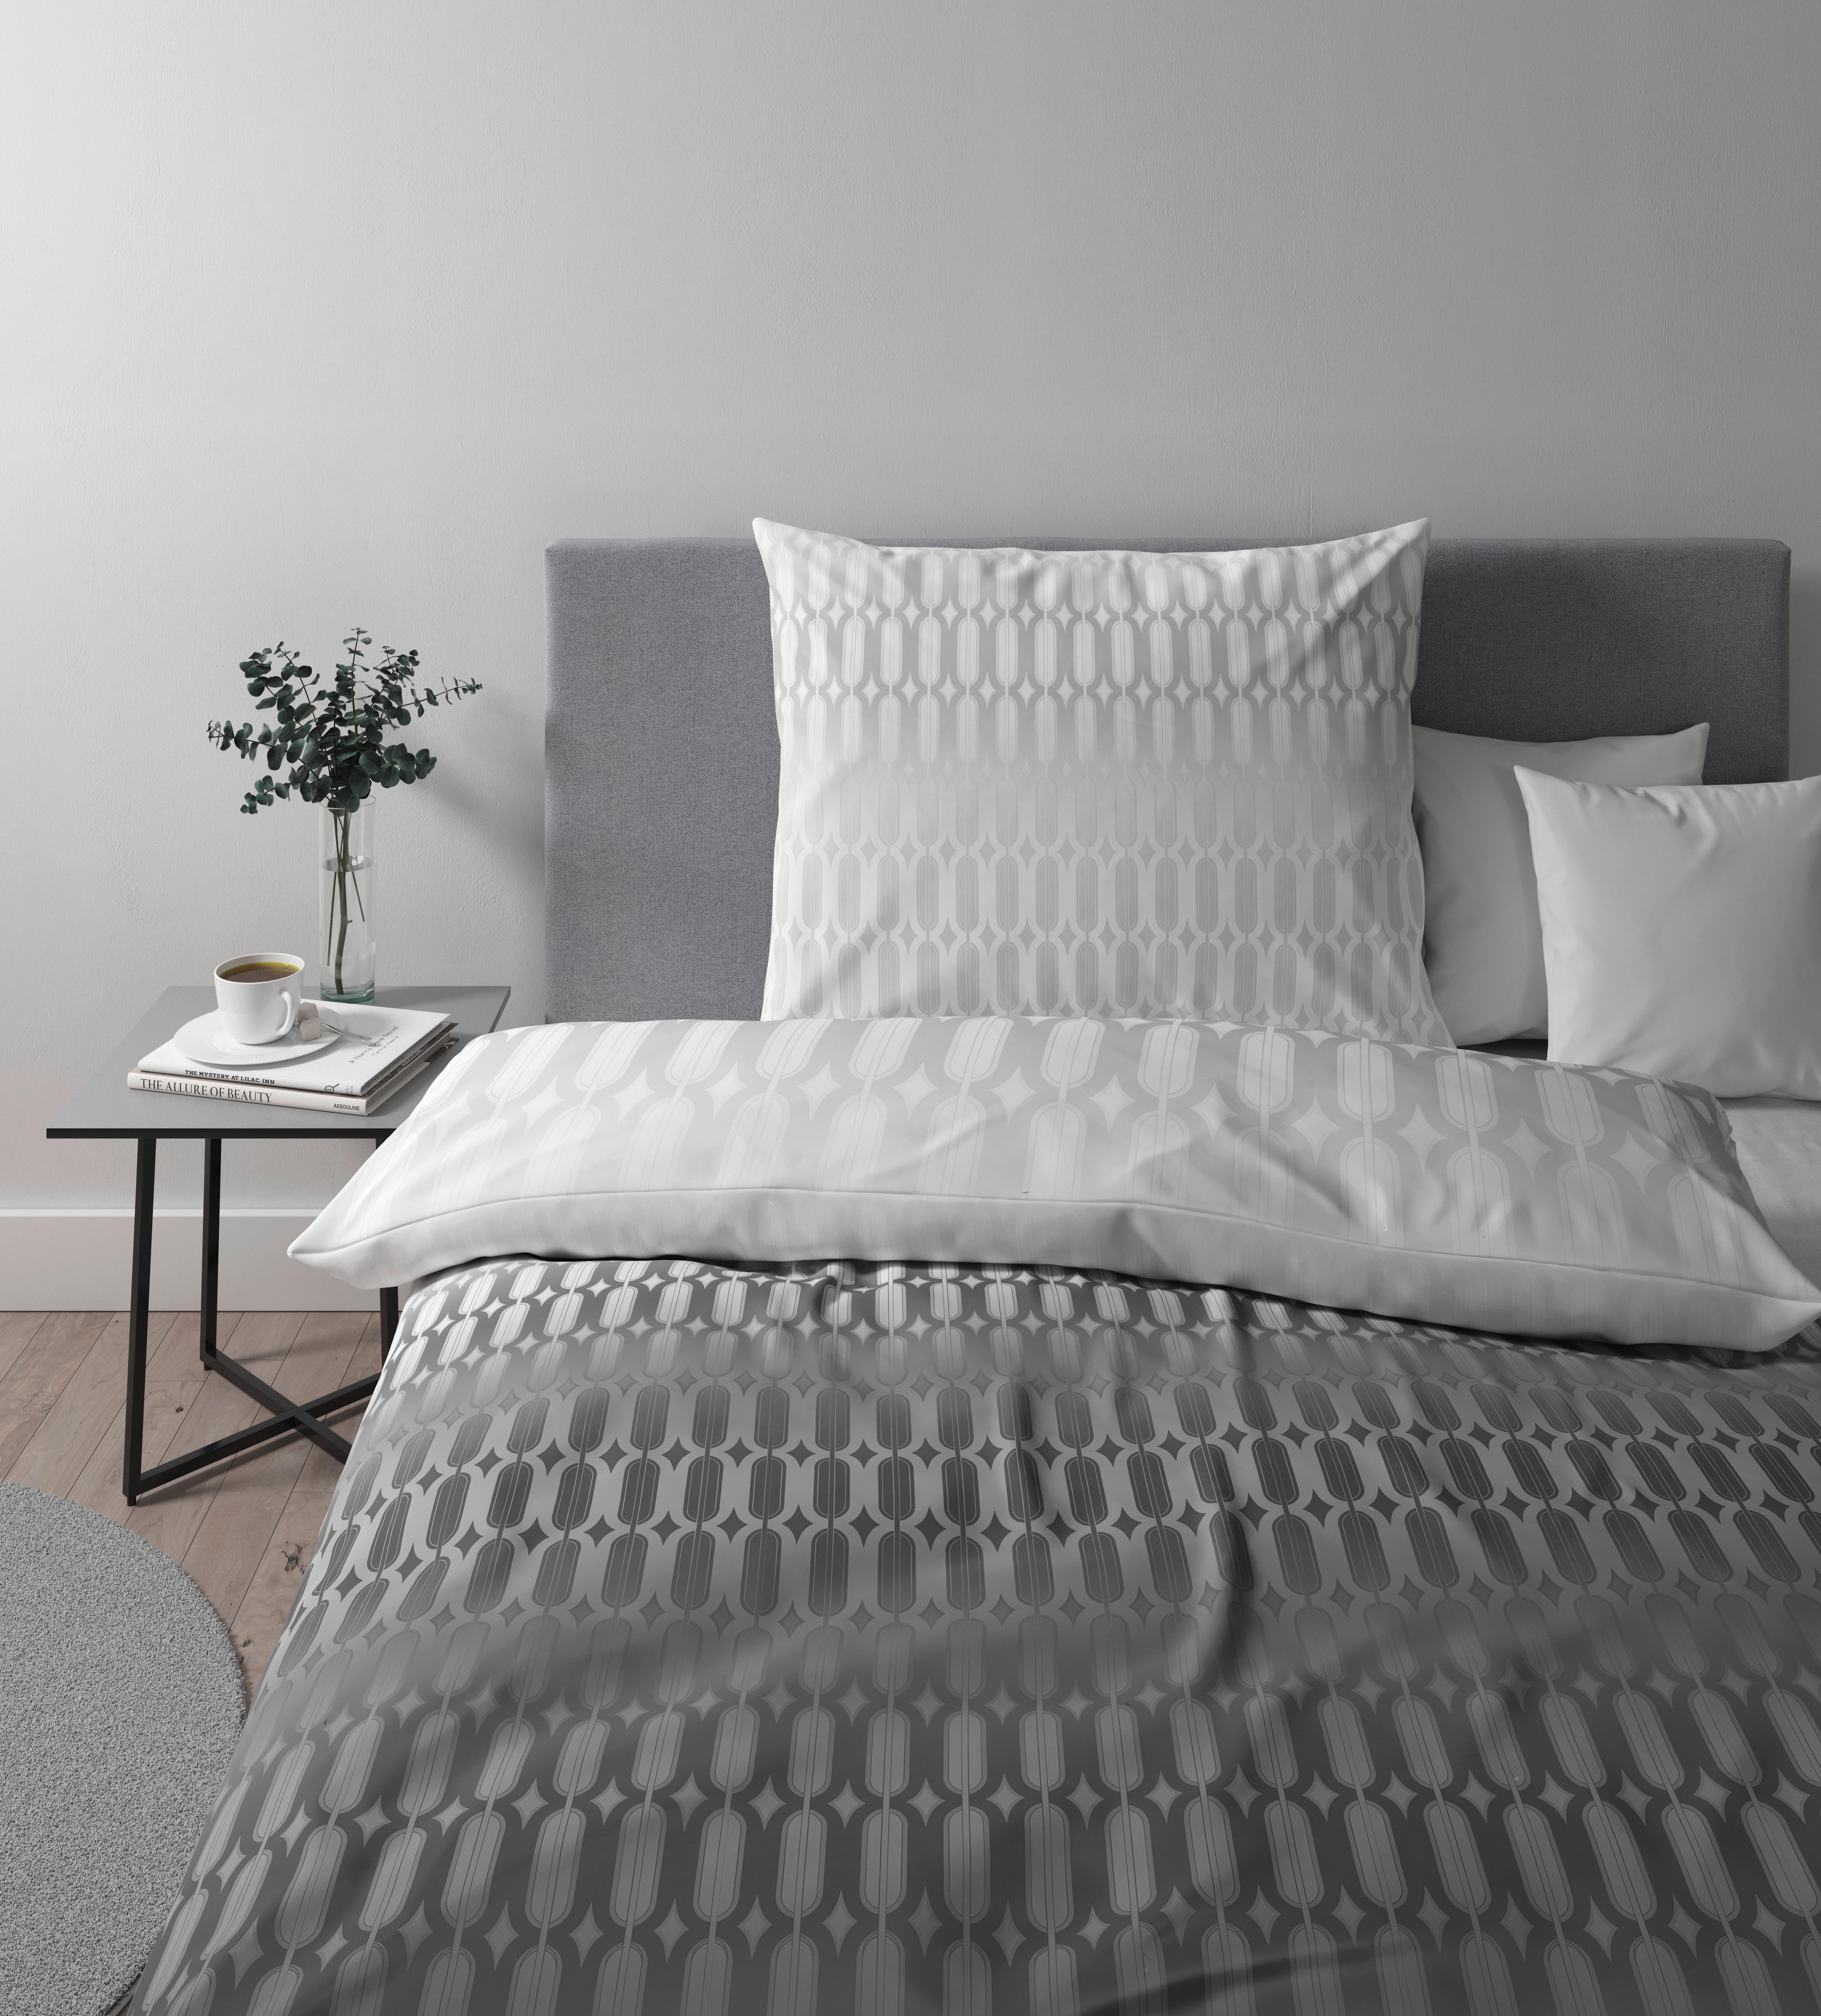 Bettwäsche Picol ca. 160x210cm - Silberfarben/Grau, Modern, Textil (160/210cm) - Premium Living